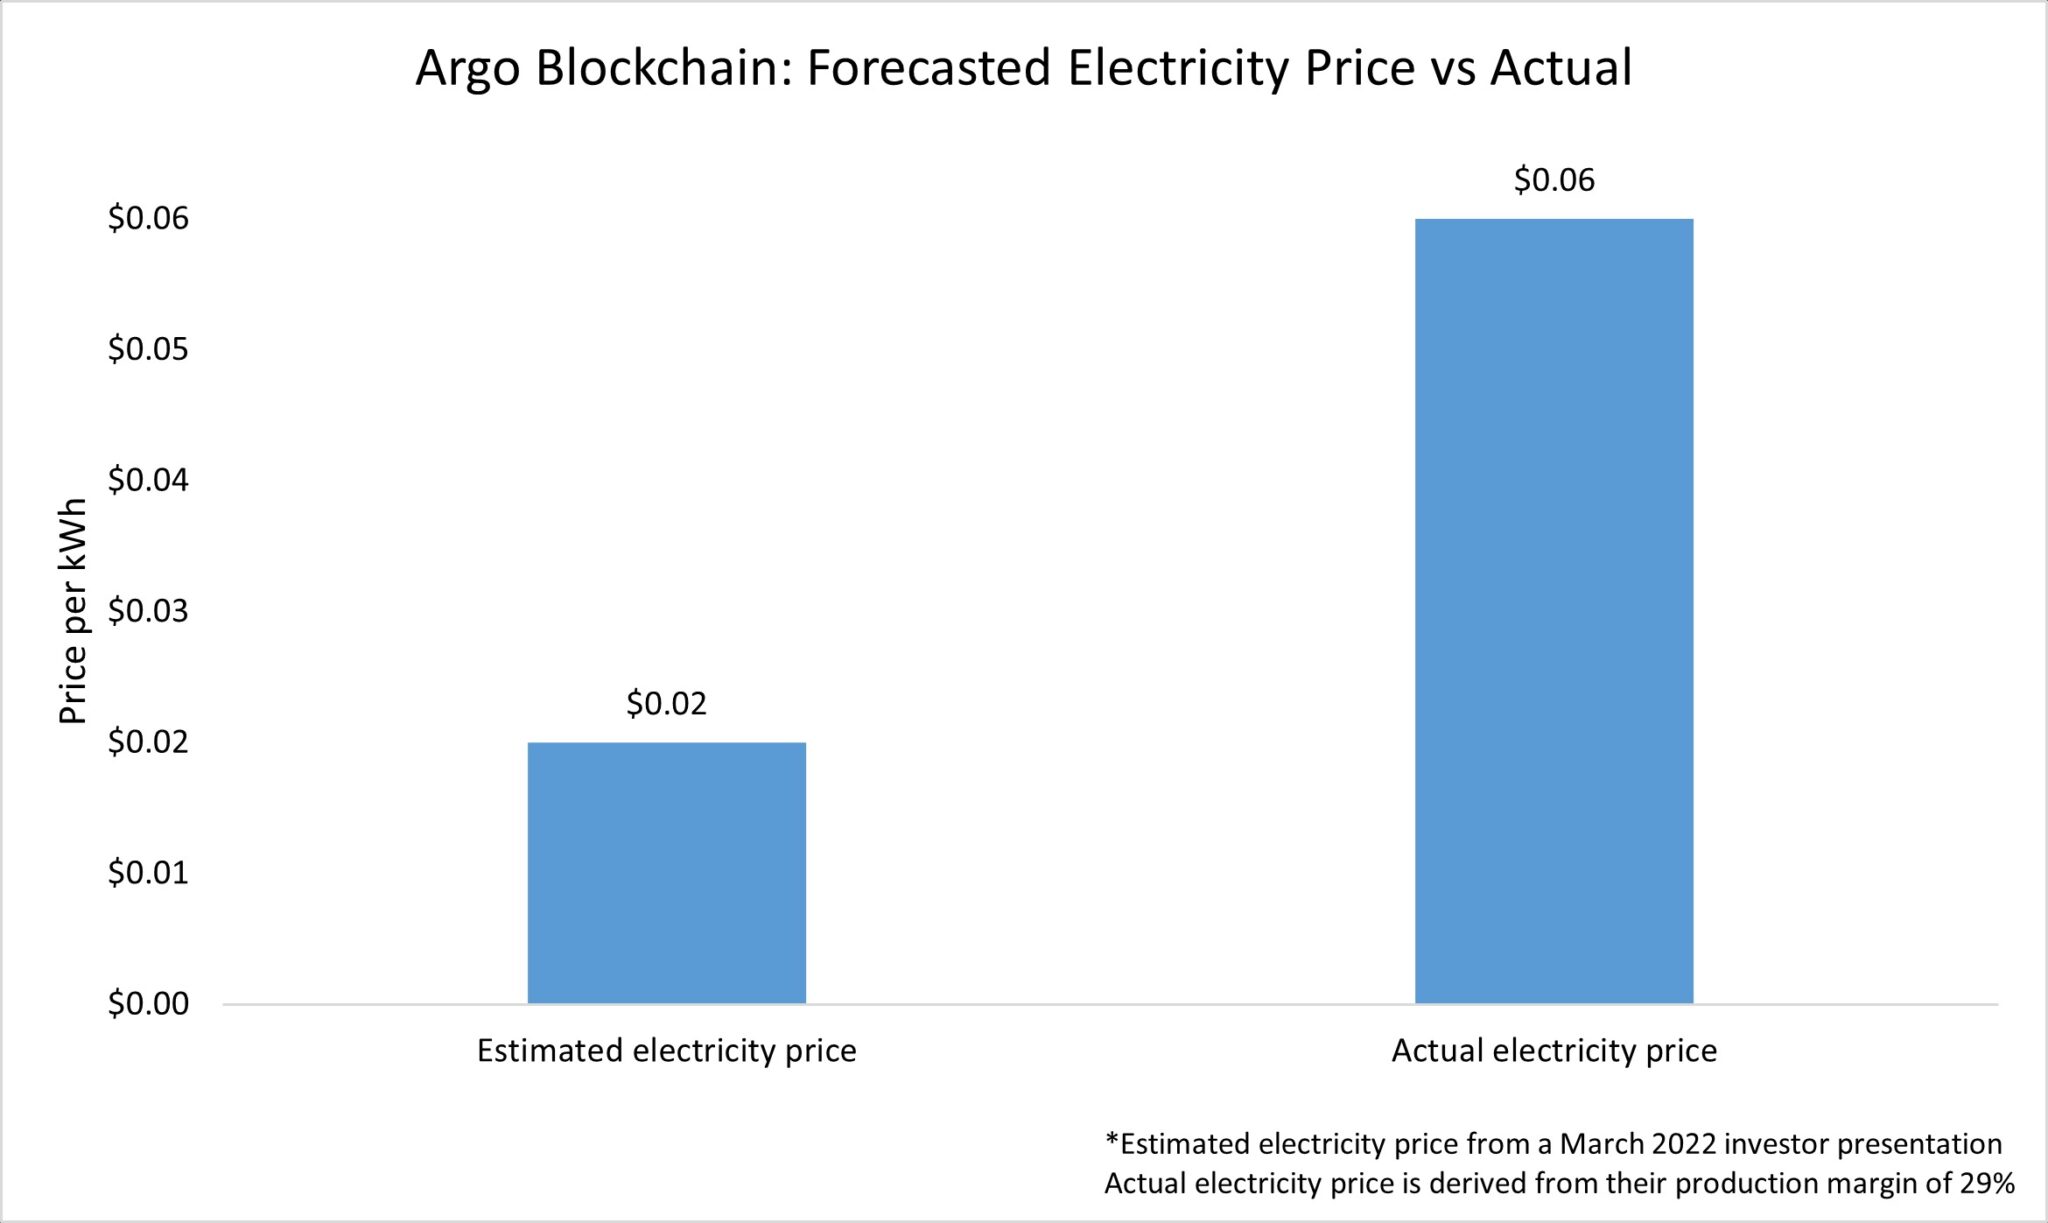 Graf zobrazující odhadovanou cenu elektřiny a skutečnou cenu elektřiny, kterou společnost Argo platila za kWh v roce 2022 (zdroj: Jaran Mellerud)